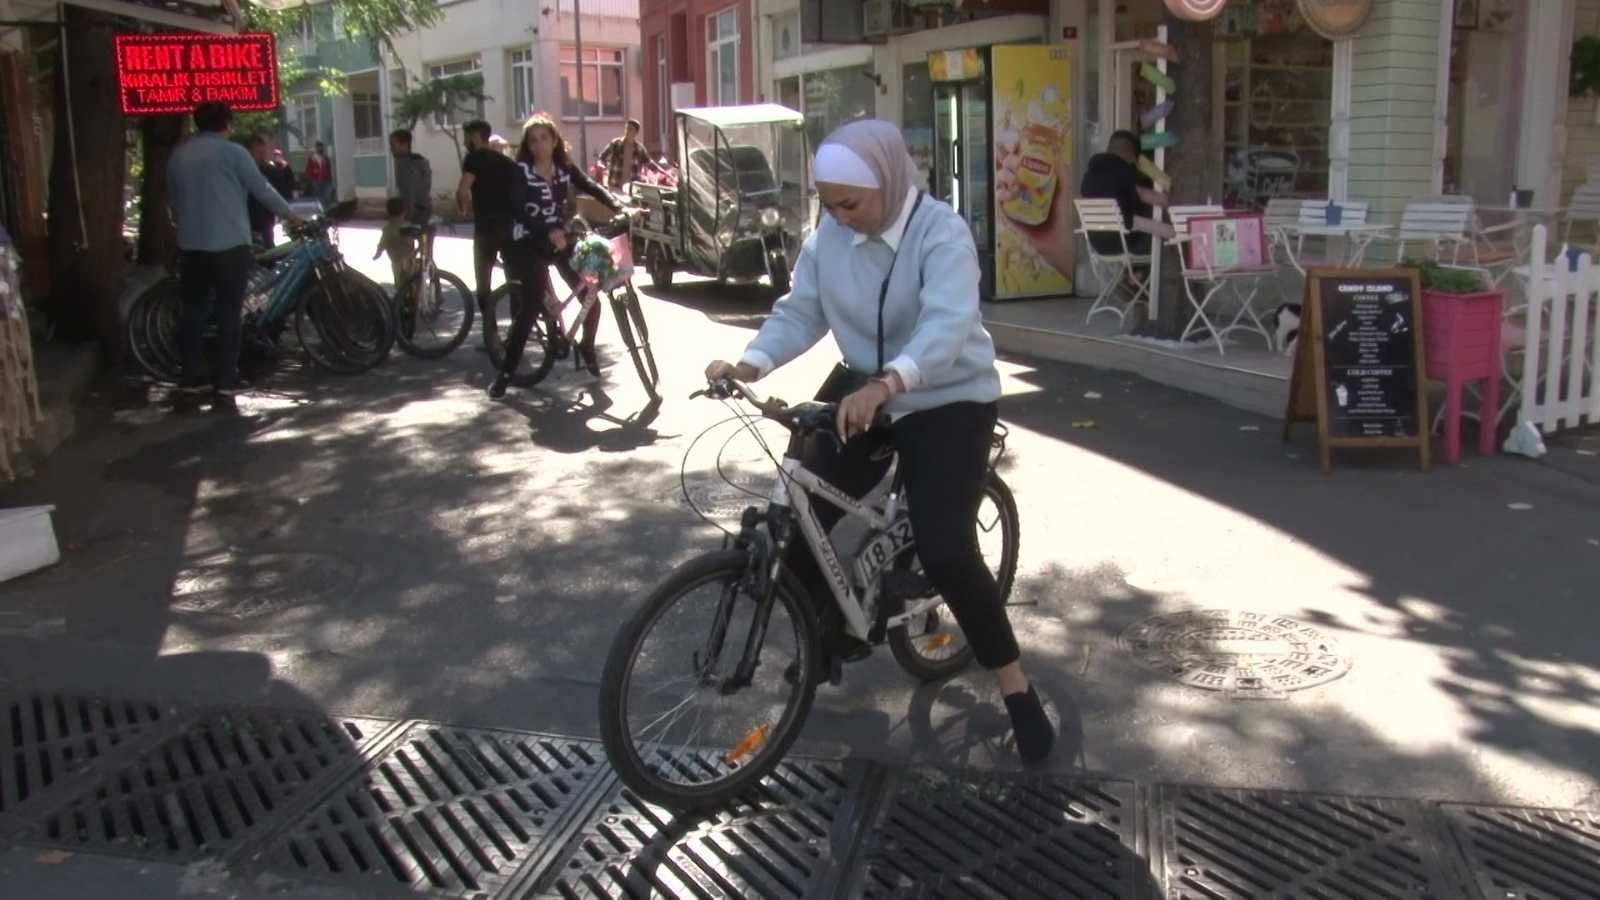 (Özel) Adalar’da akülü araç yasağı gelince bisikletlere talep arttı #istanbul